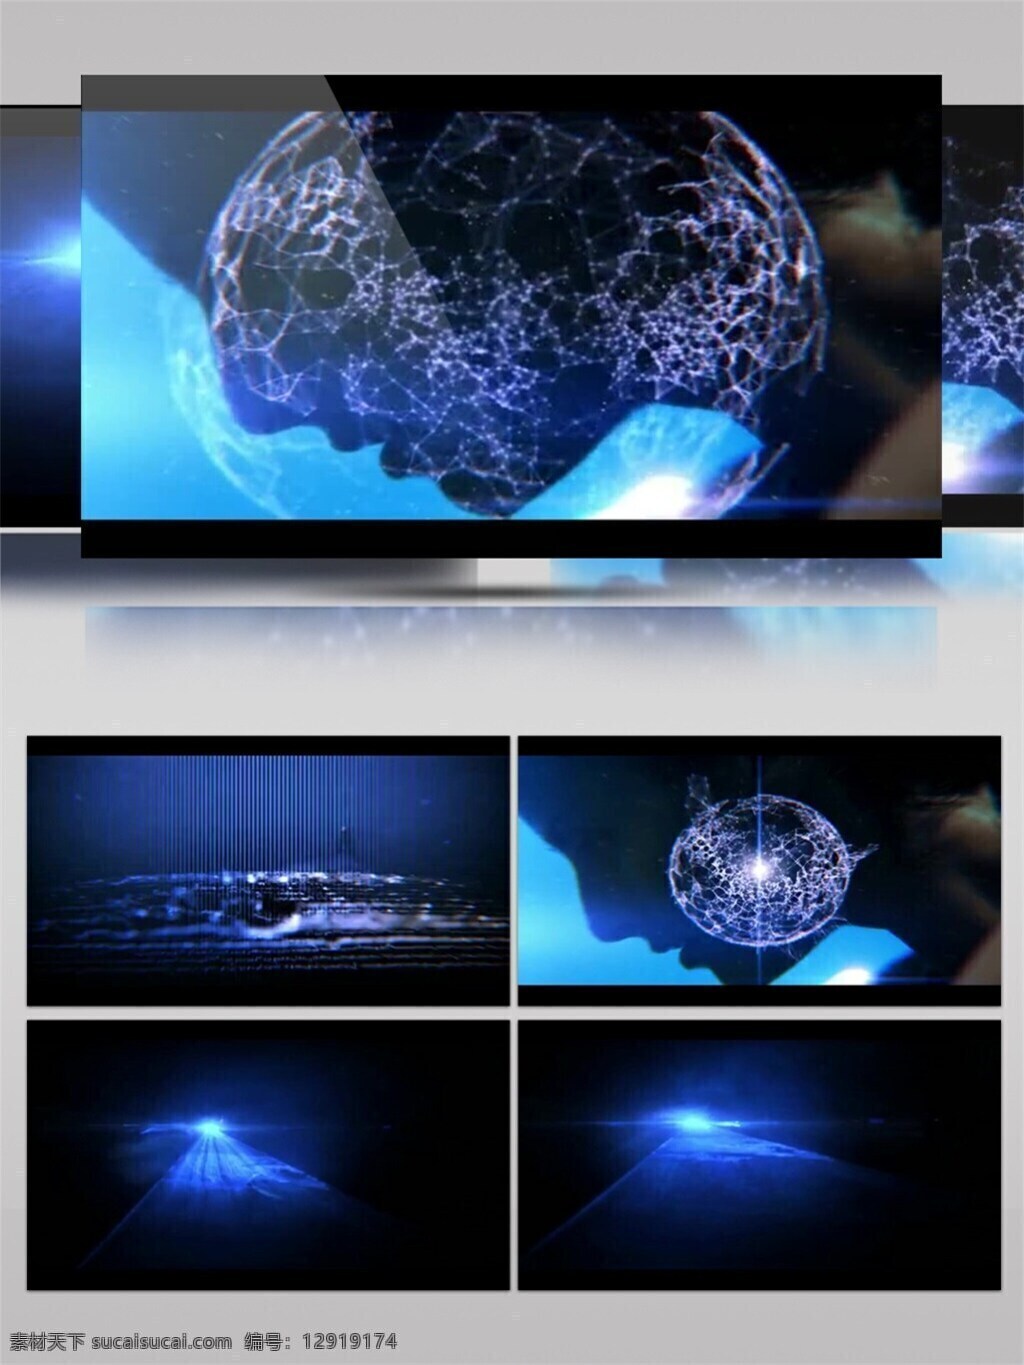 蓝光 梦幻 星球 高清 视频 地球 宇宙 星际 蓝色 唯美背景素材 视觉享受 节目灯光